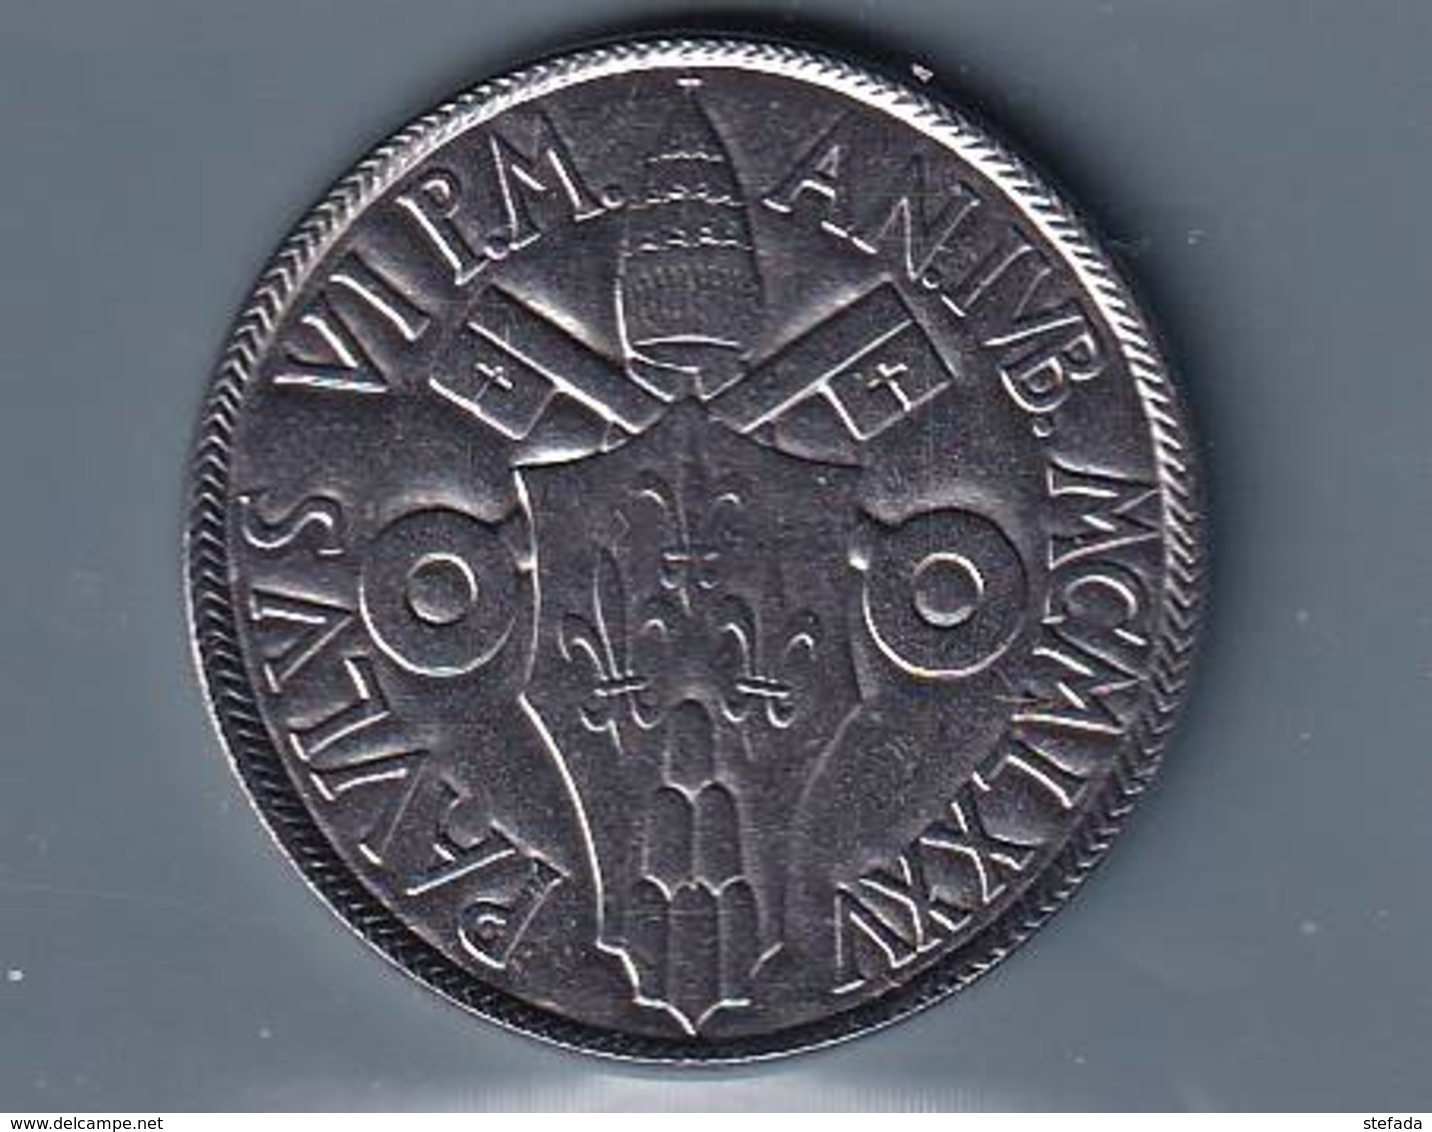 VATICANO VATIKAN VATICAN  1975 PAOLOVI 100 Lire - Vaticano